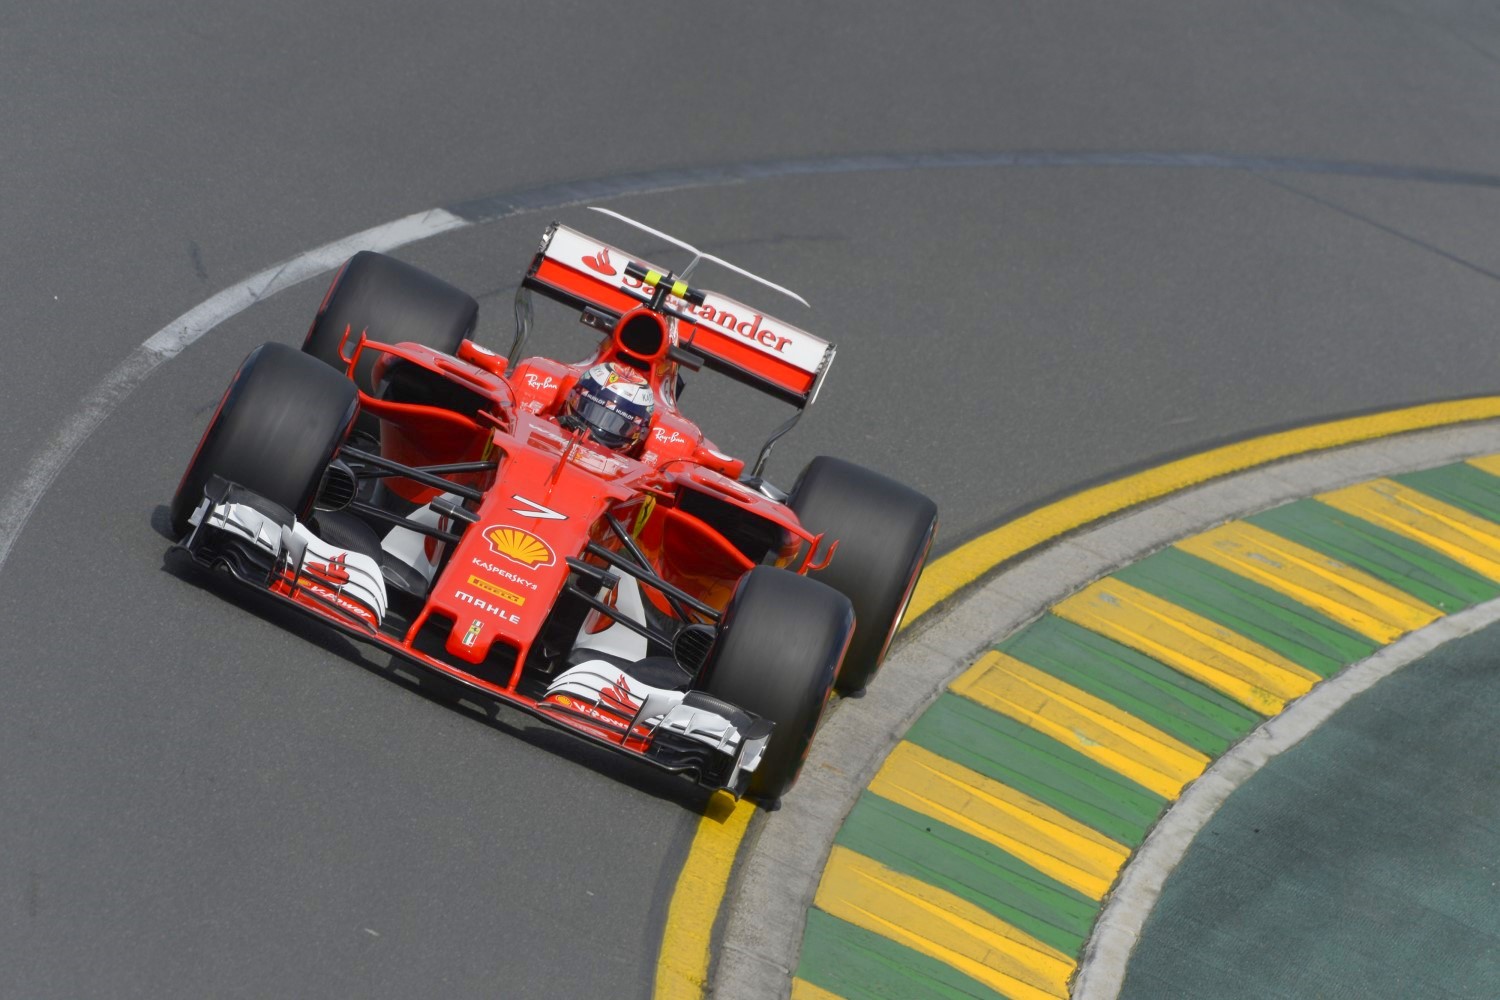 Raikkonen's Ferrari